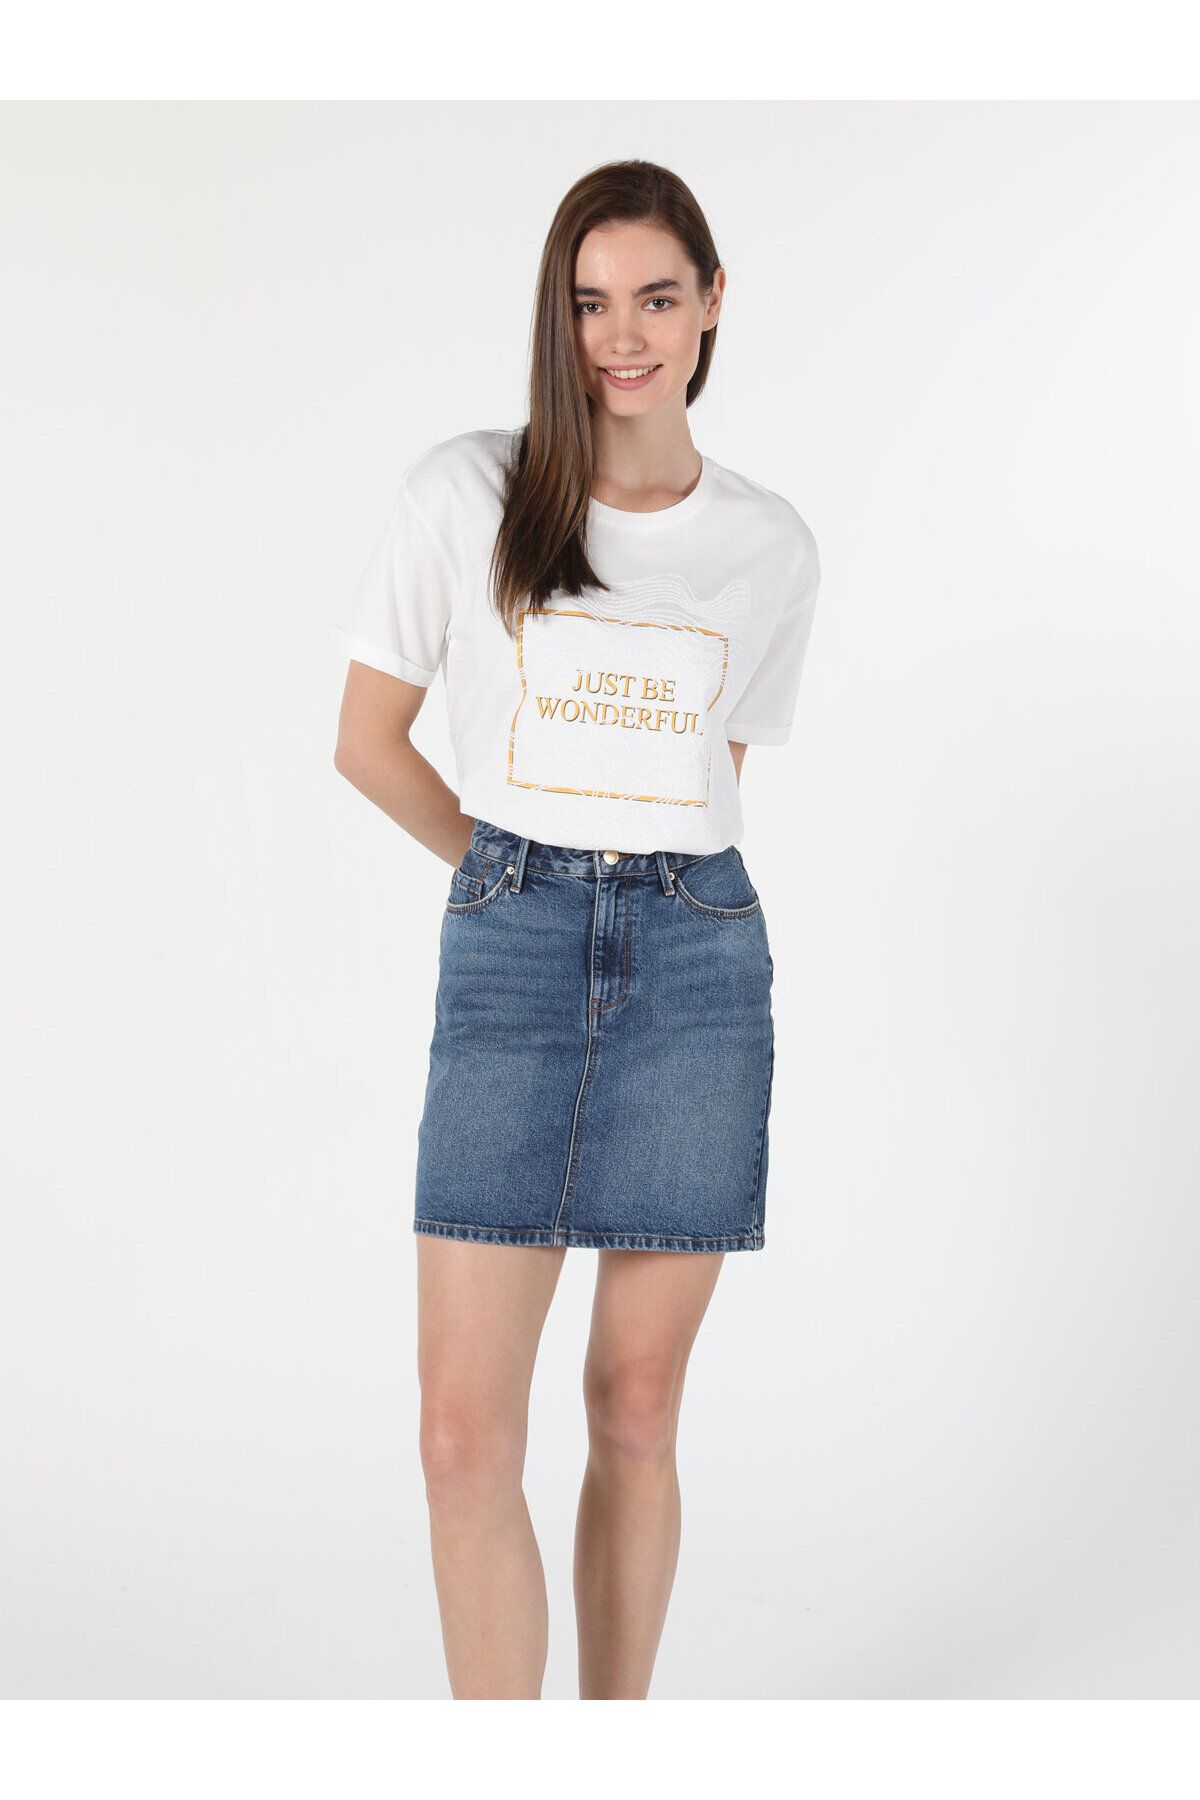 Colin’s تی شرت آستین کوتاه سفید زنانه چاپ شده با یقه Comfort Fit